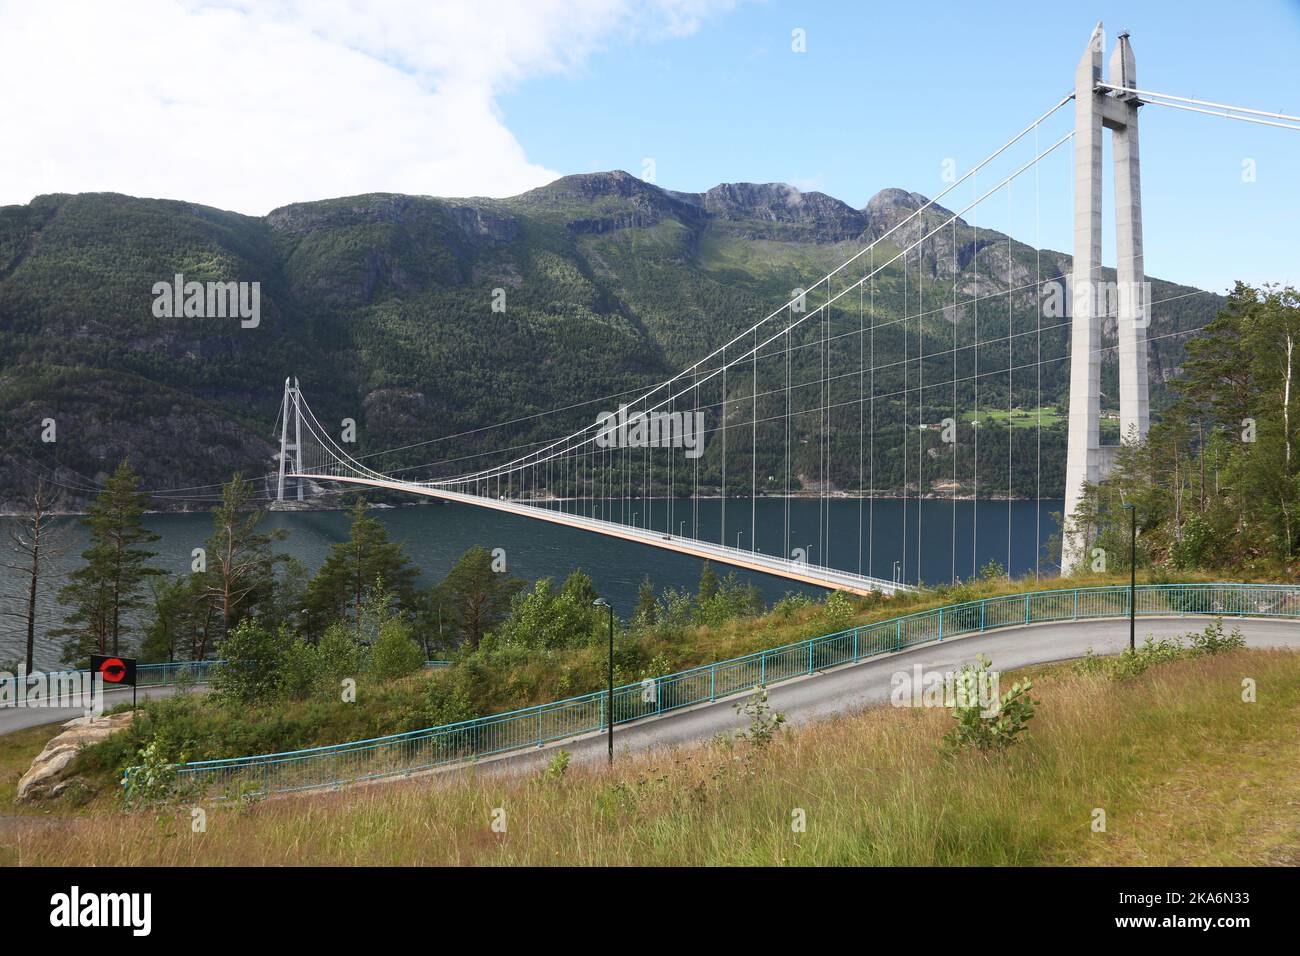 Eidfjord, Noruega 20160718. FILEPHOTO. Hardangerbrua (Puente de Hardanger) es un puente que cruza Eidfjorden entre Vallaviki Ulvik y Bu en los municipios de Ullensvang. El puente . El puente tiene aproximadamente 1380 metros de largo (con un tramo principal de 1.310 metros), y está entre los 10 puentes colgantes más largos del mundo y el más largo de Noruega. Foto: Erik Johansen / NTB scanpix Foto de stock